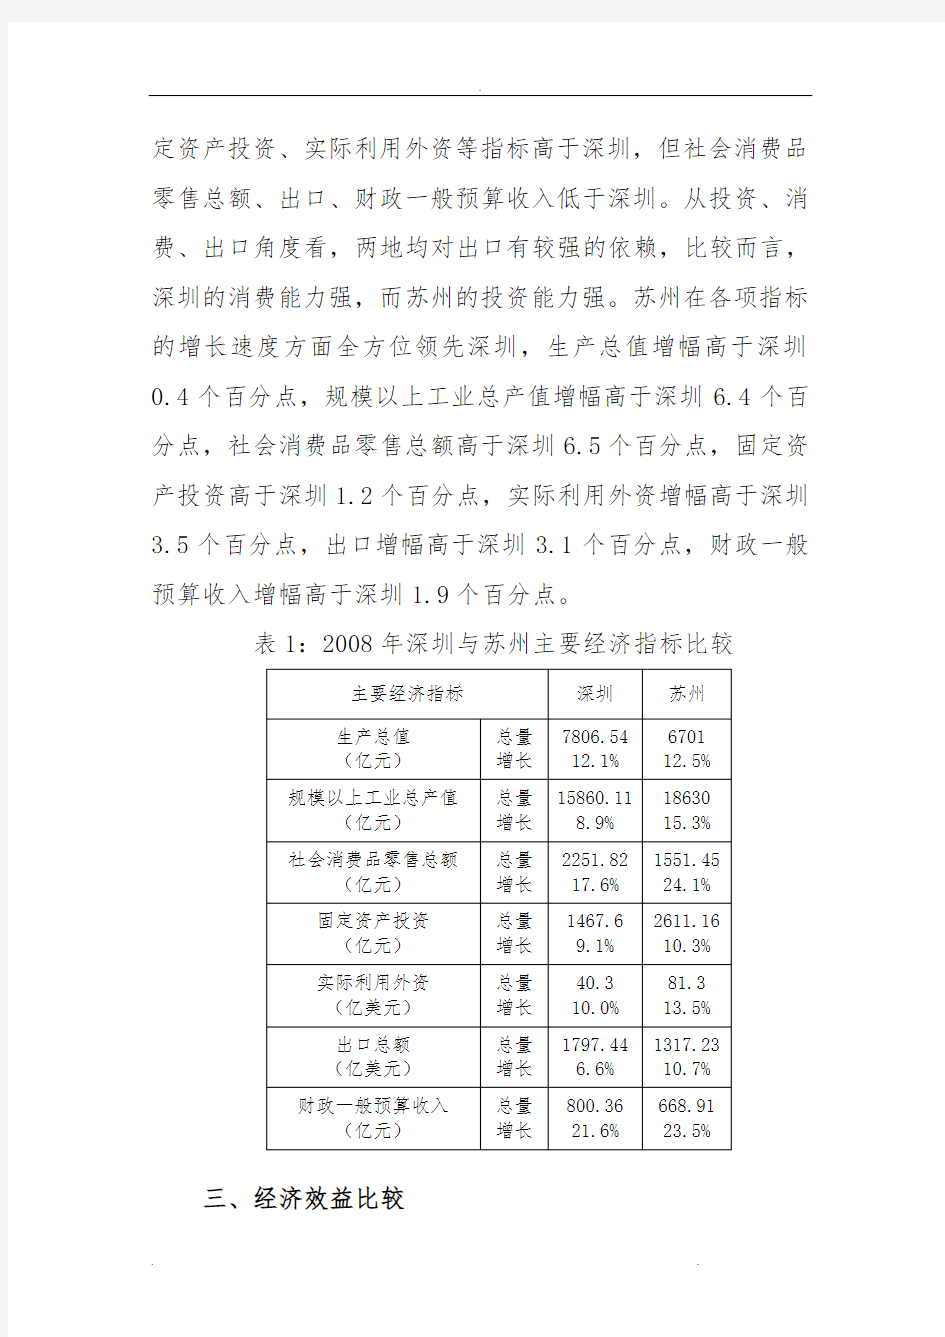 深圳和苏州经济发展的比较分析_深圳和苏州经济发展的